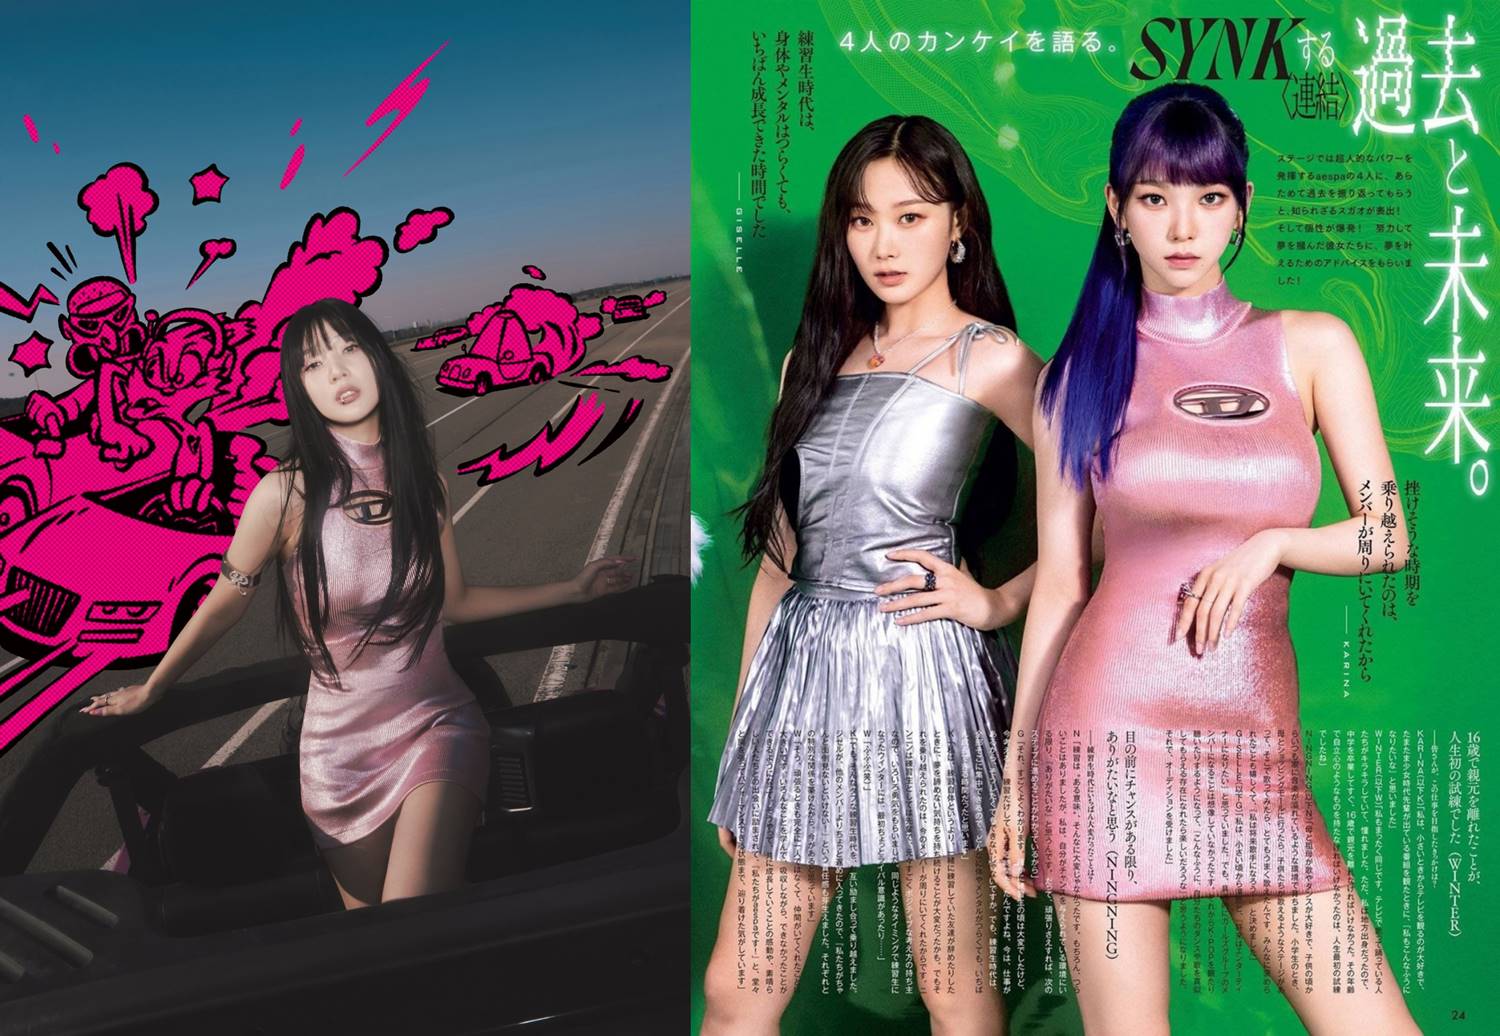 Karina aespa dan Joy Red Velvet mengenakan outfit sama persis